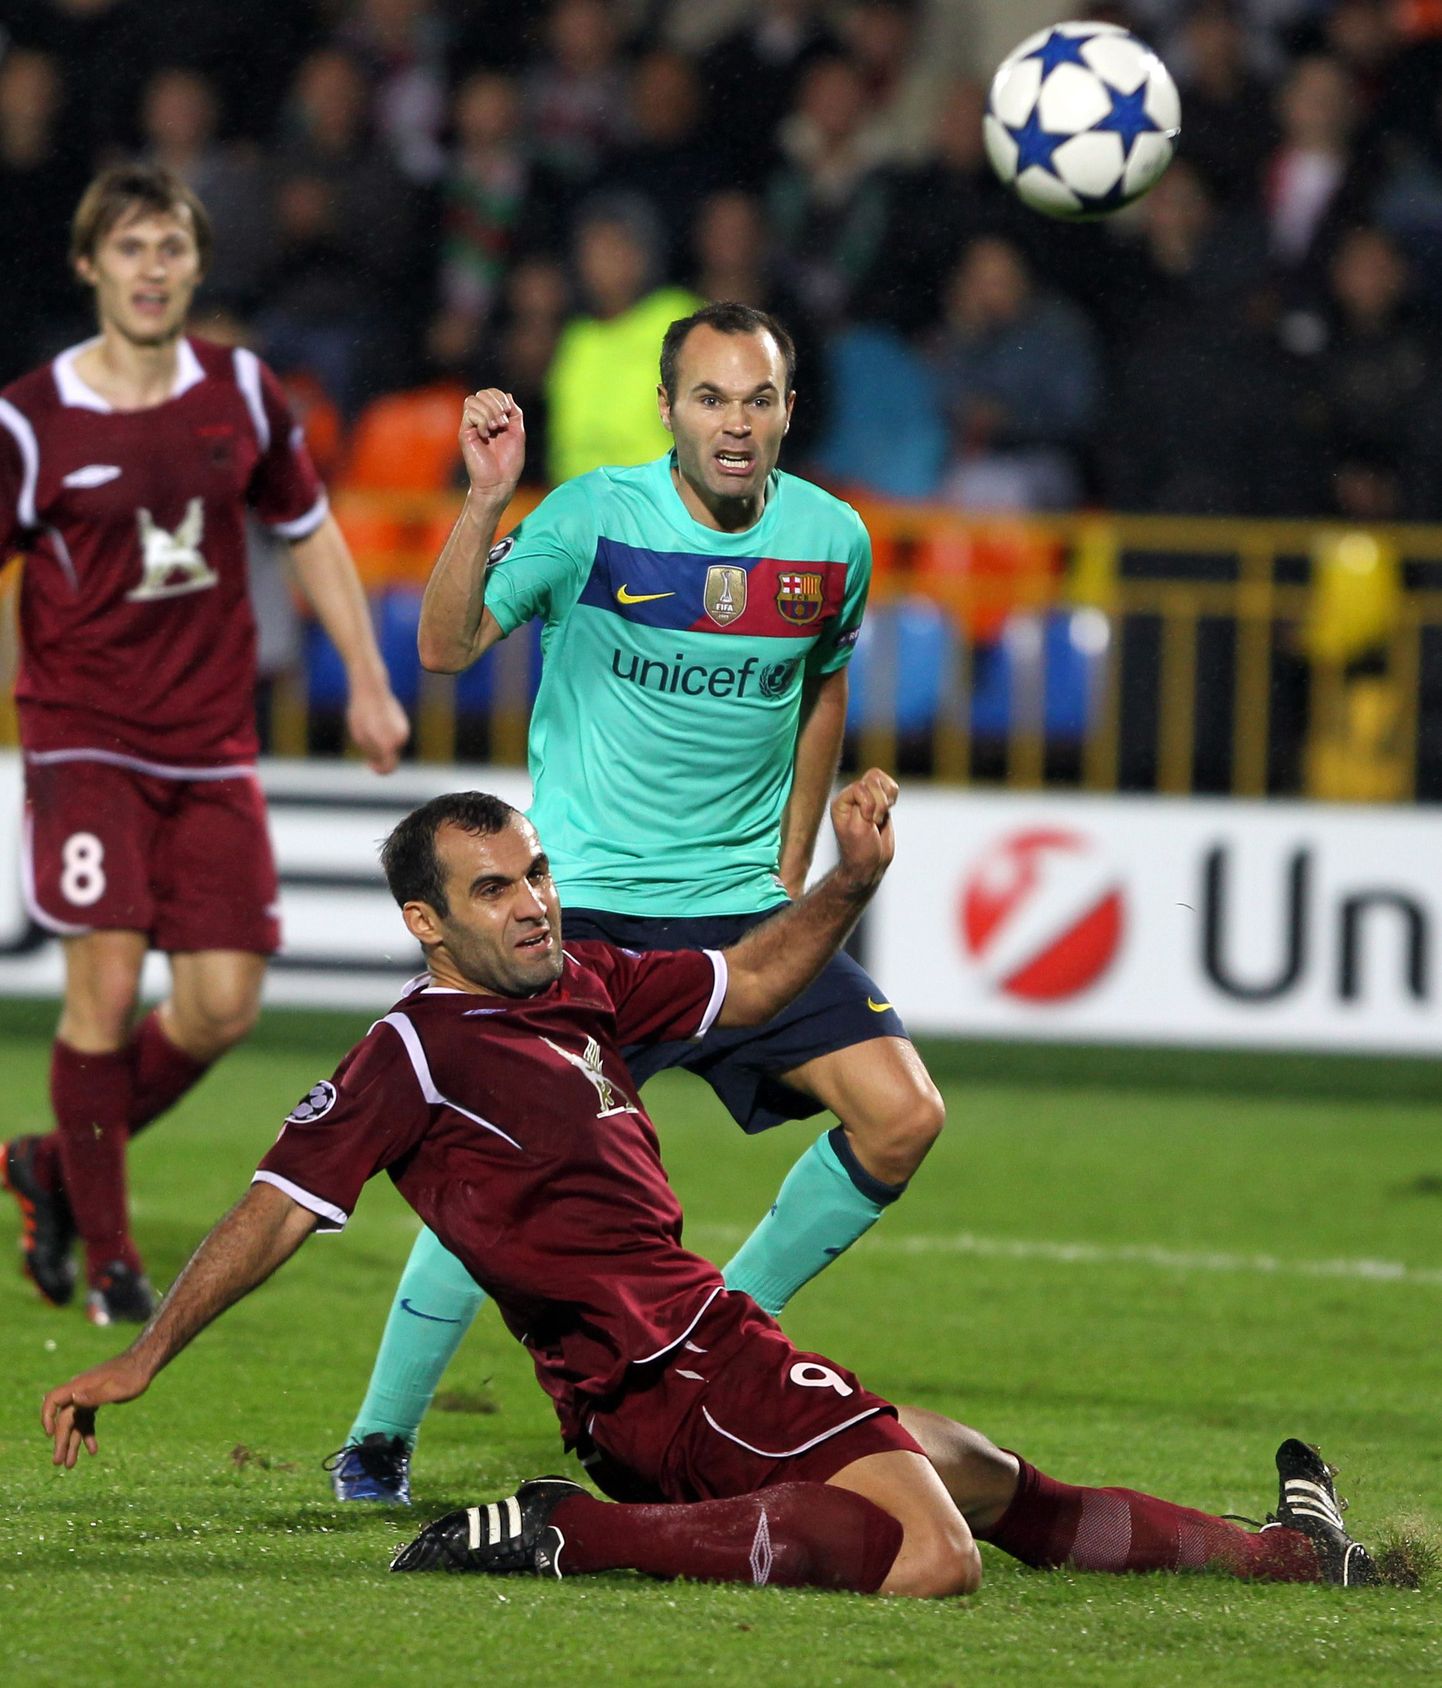 Момент матча "Рубин" - "Барселона" в Казани 30 сентября. Игра закончилась со счетом 1:1.